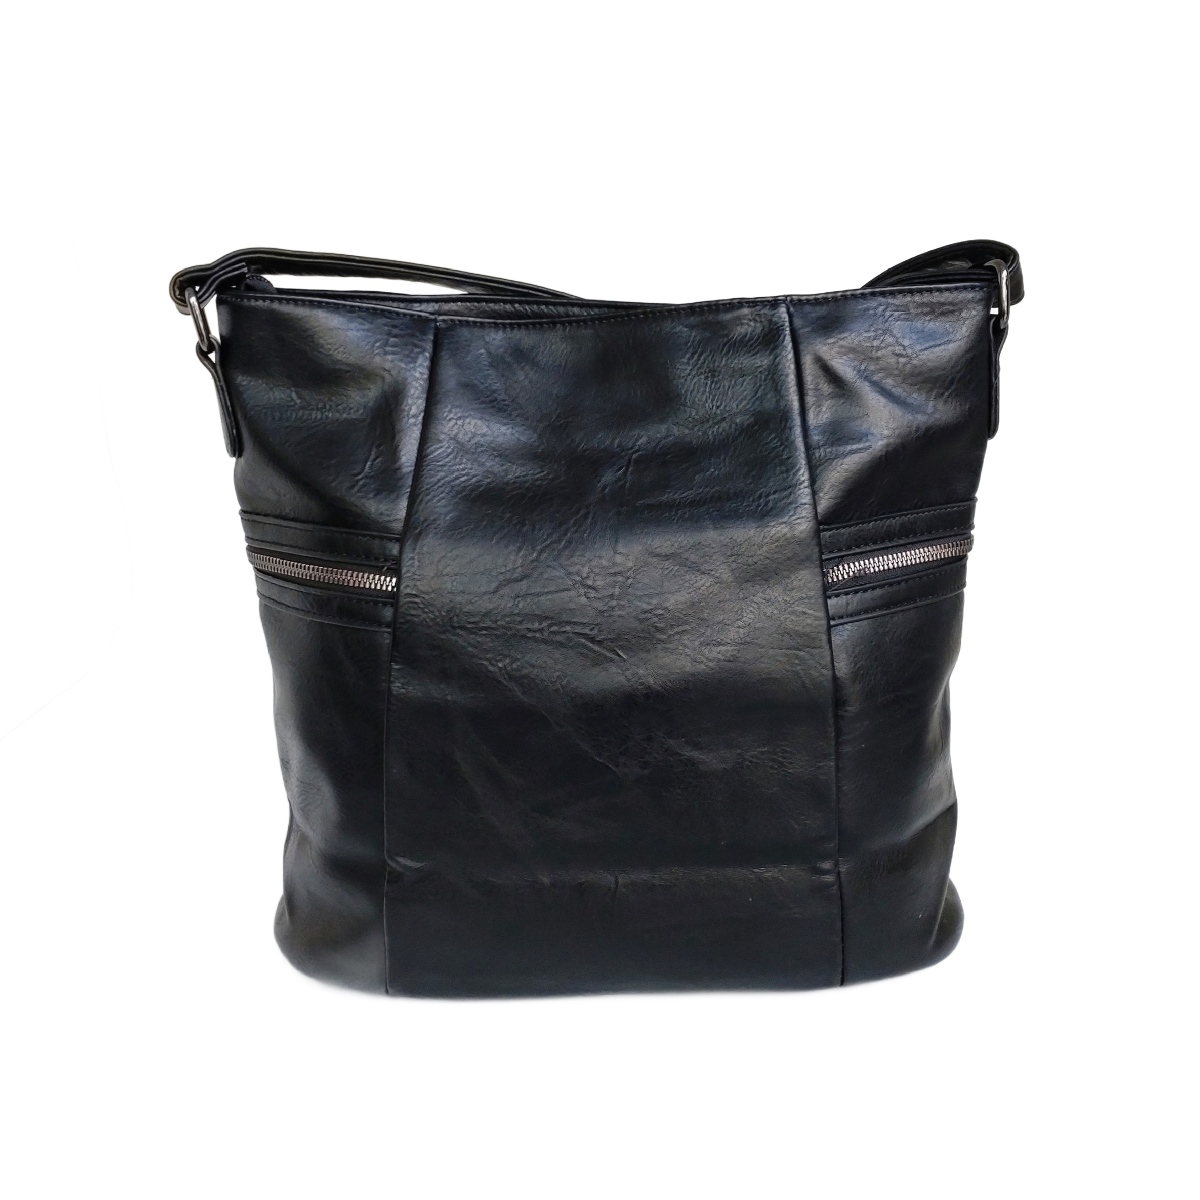 Γυναικεία Τσάντα 9039-103.B Ώμου-Χιαστί, Μαύρο χρώμα.